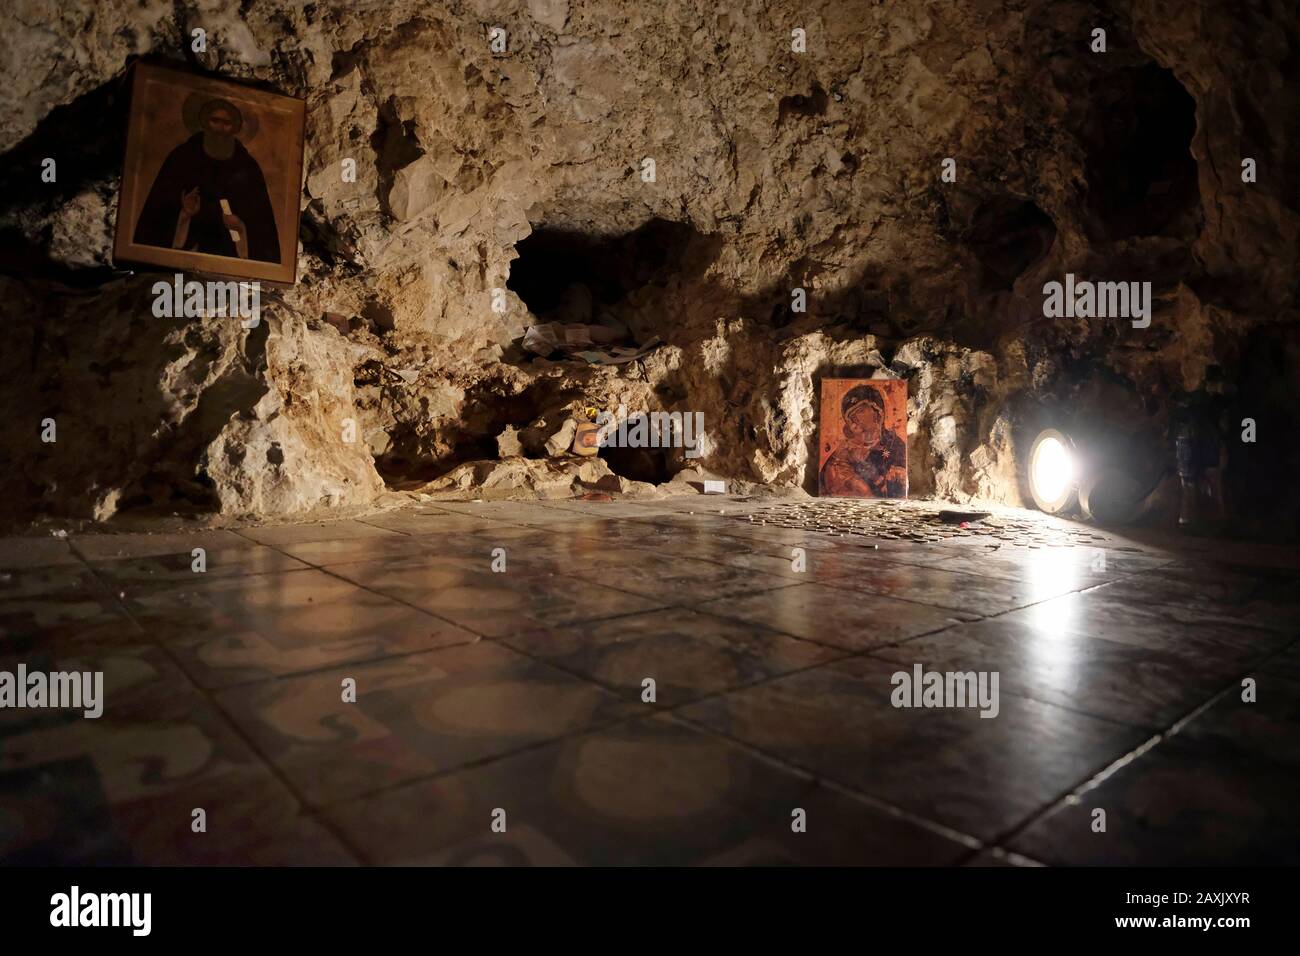 Religiöse Ikonen in einer Höhle im Inneren des griechischen orthodoxen Heiligen Klosters von Sarantarion Mountain oder Die Versuchung, die an den hängen des Mount of Temptation gebaut wurde, die sich entlang einer Klippe mit Blick auf die Stadt Jericho in den palästinensischen Gebieten in der Nähe des Jordan im Westjordanland, Israel, befindet Stockfoto